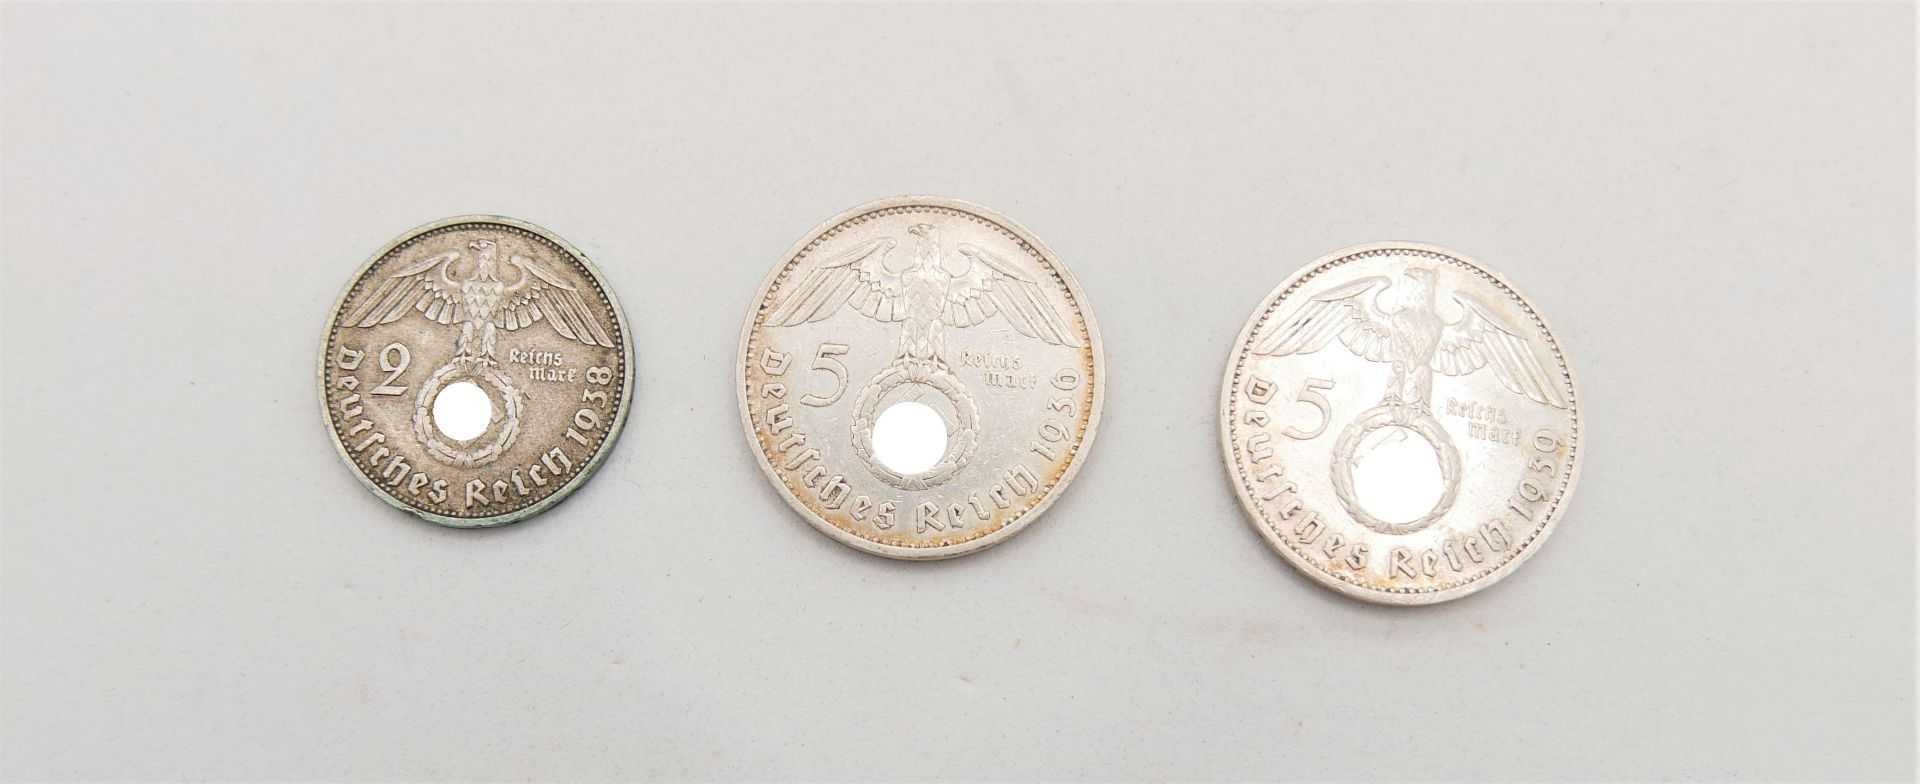 Drittes Reich, 3 Silbermünzen, 2x 5 Mark sowie 1x 2 Mark.